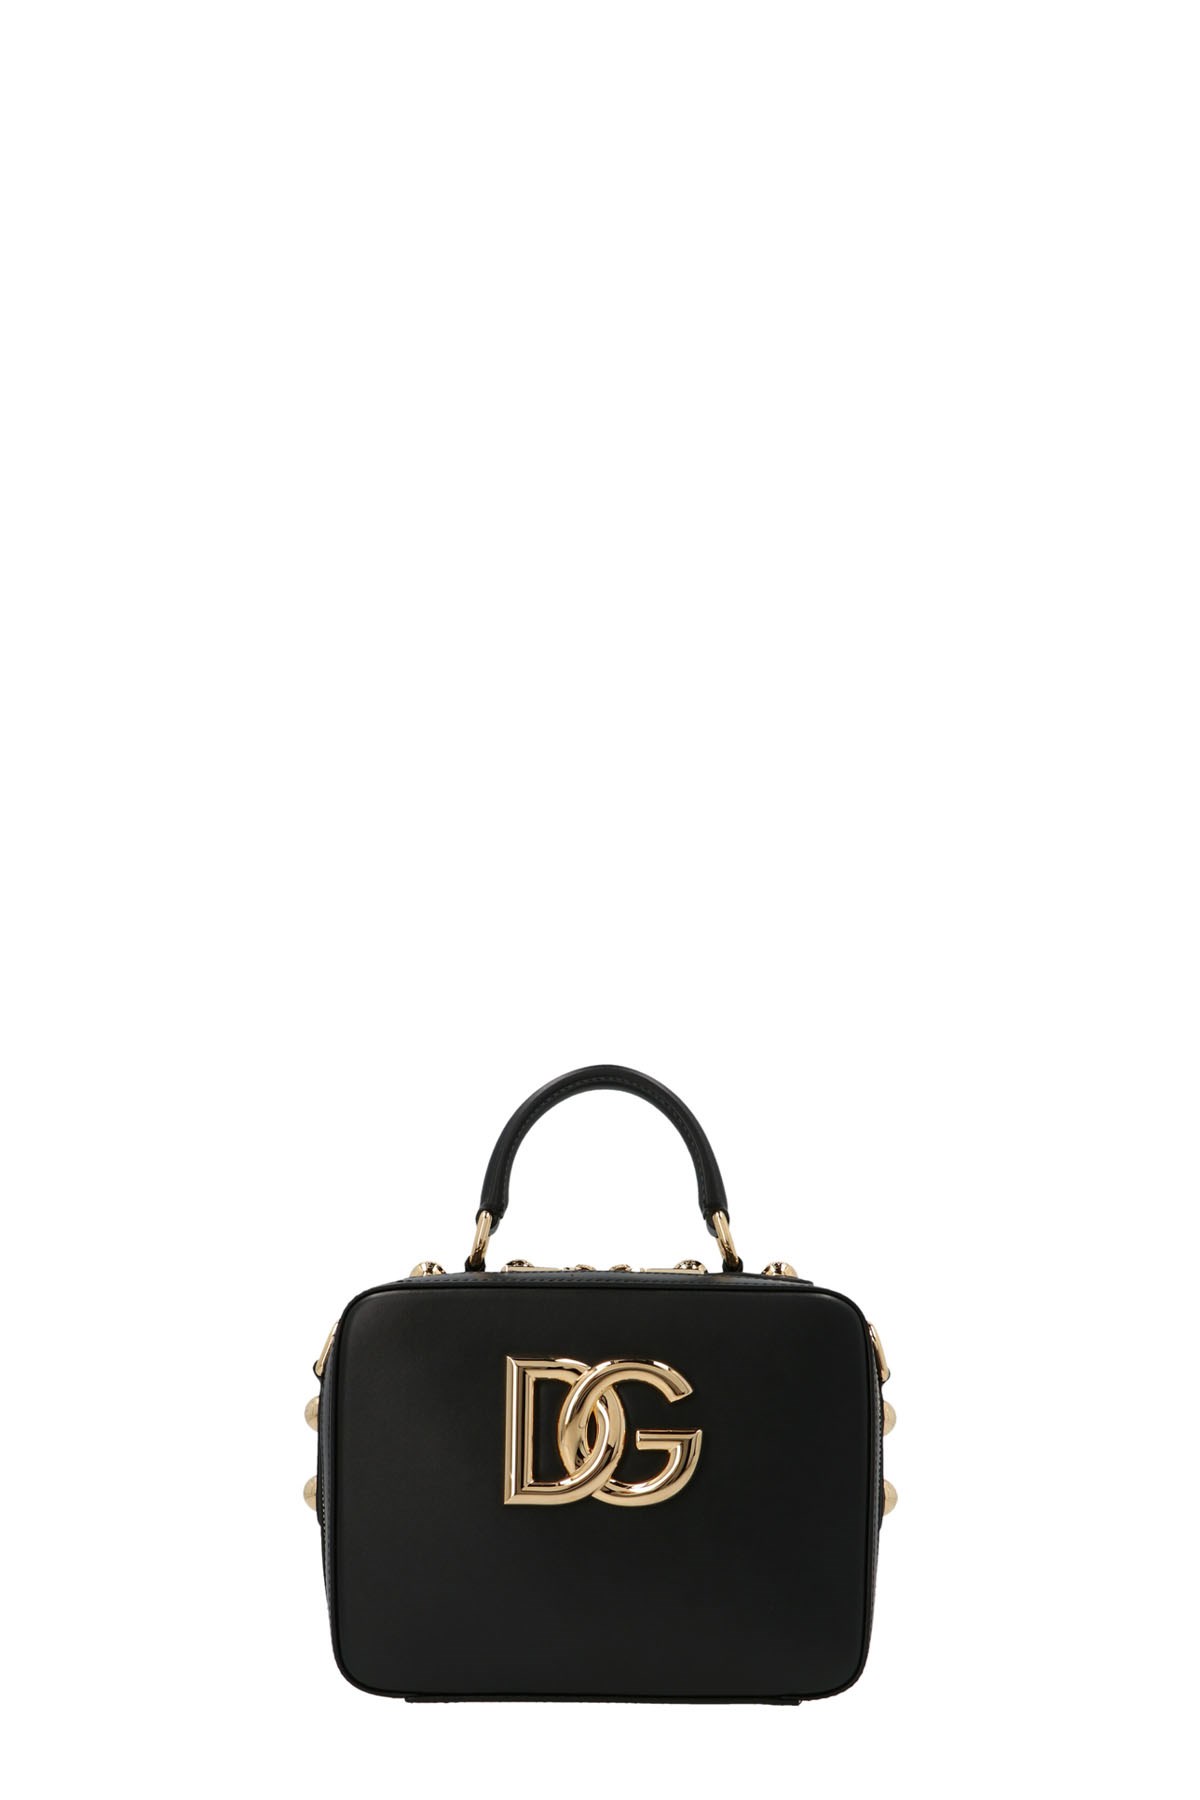 DOLCE & GABBANA '3.5' Handbag